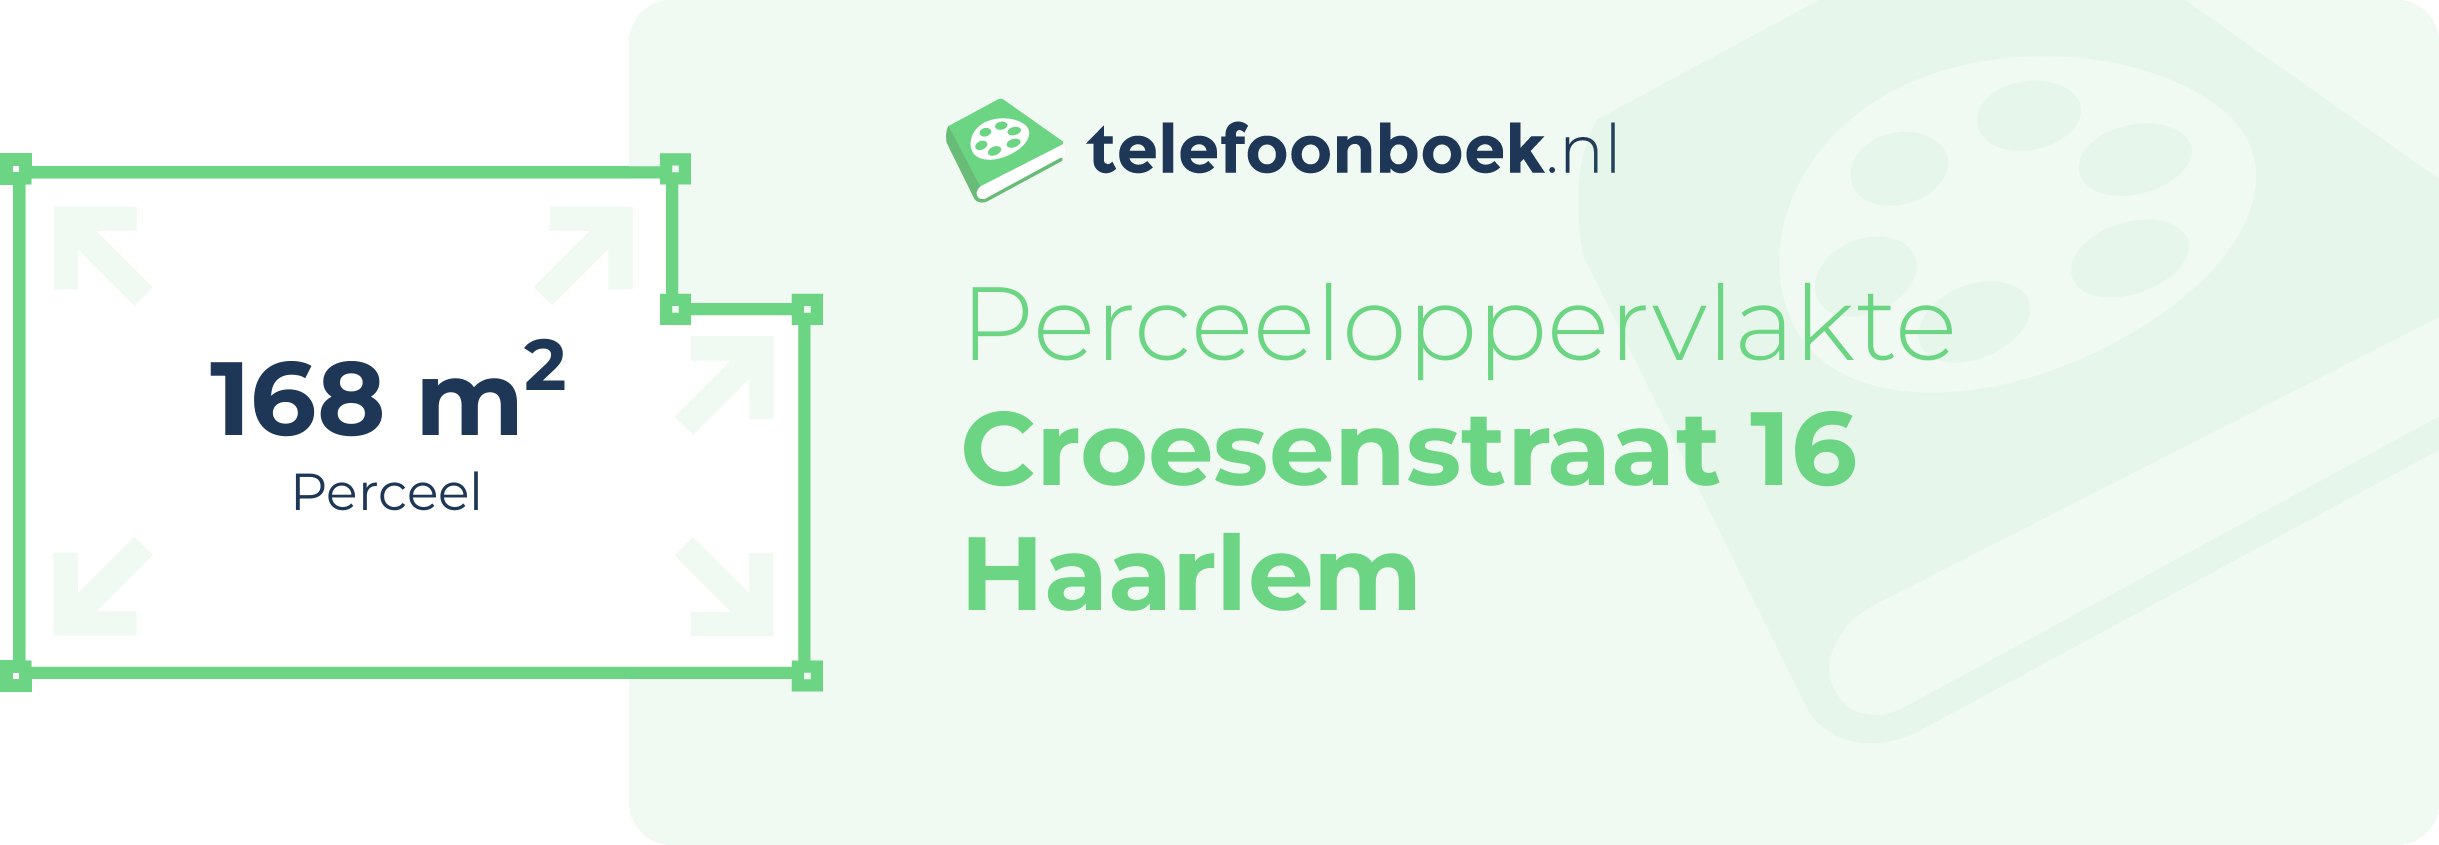 Perceeloppervlakte Croesenstraat 16 Haarlem